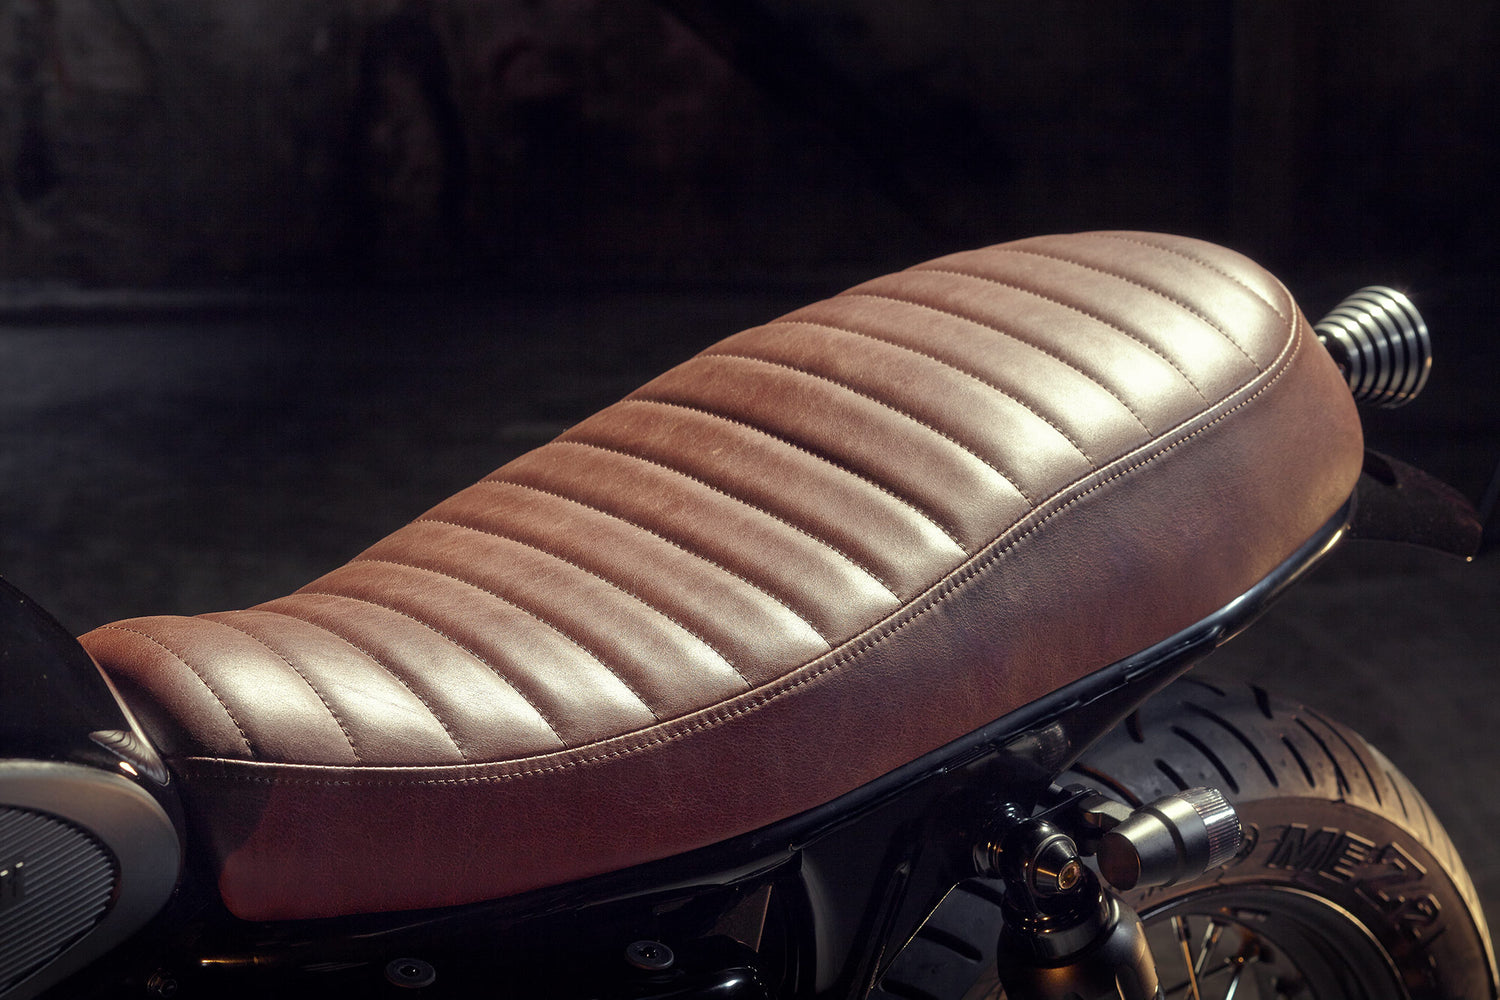 Triumph Bonneville T100 2014 Custom Leather Seat